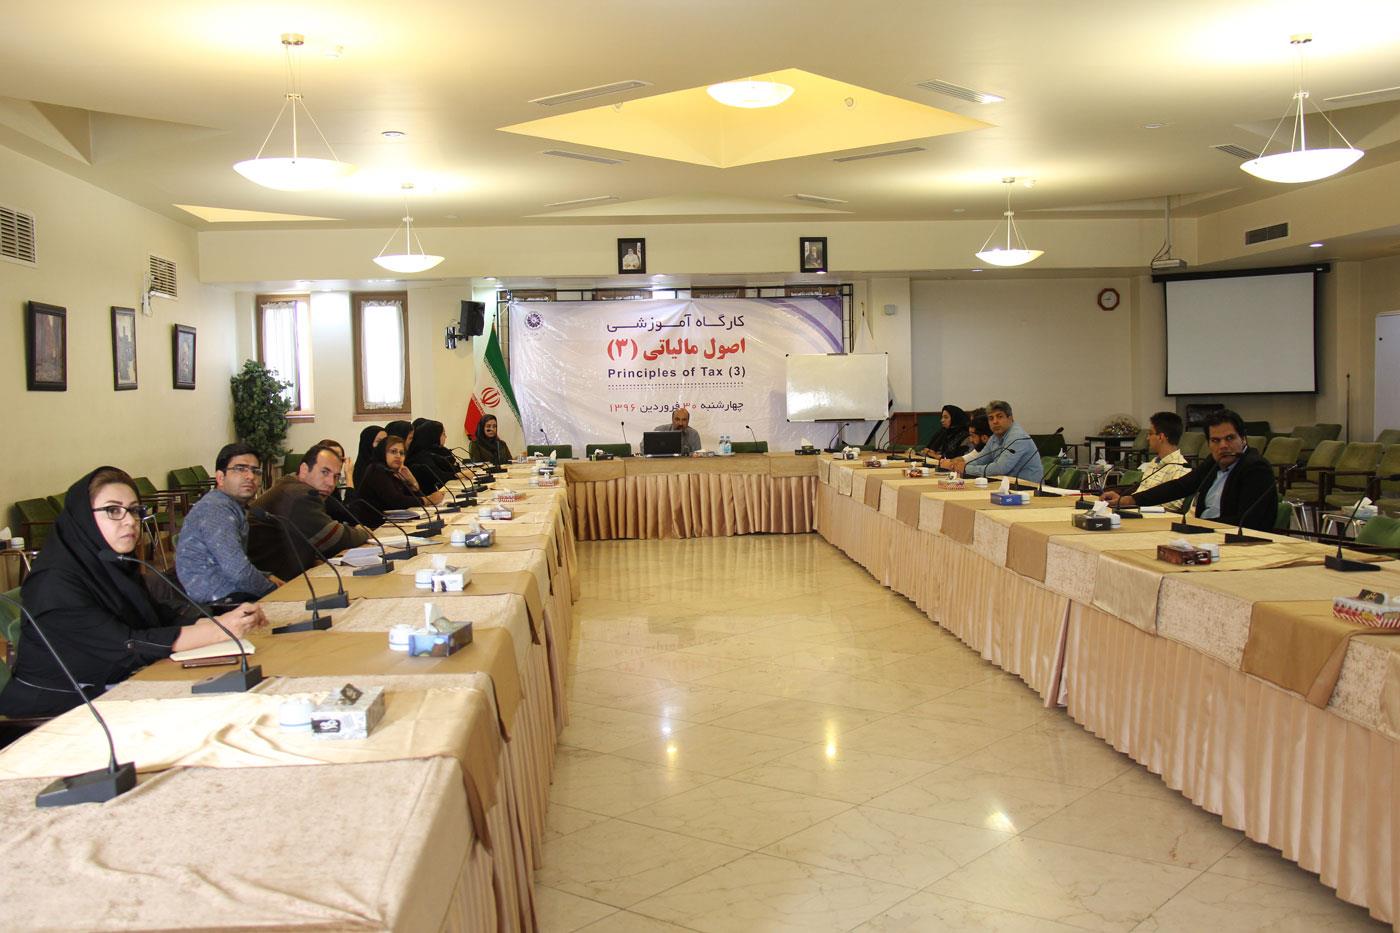 برگزاری کارگاه آموزشی اصول مالیاتی 3  کارگاه آموزشی اصول مالیاتی 3 در اتاق بازرگانی، صنایع، معادن و کشاورزی اصفهان برگزار شد.